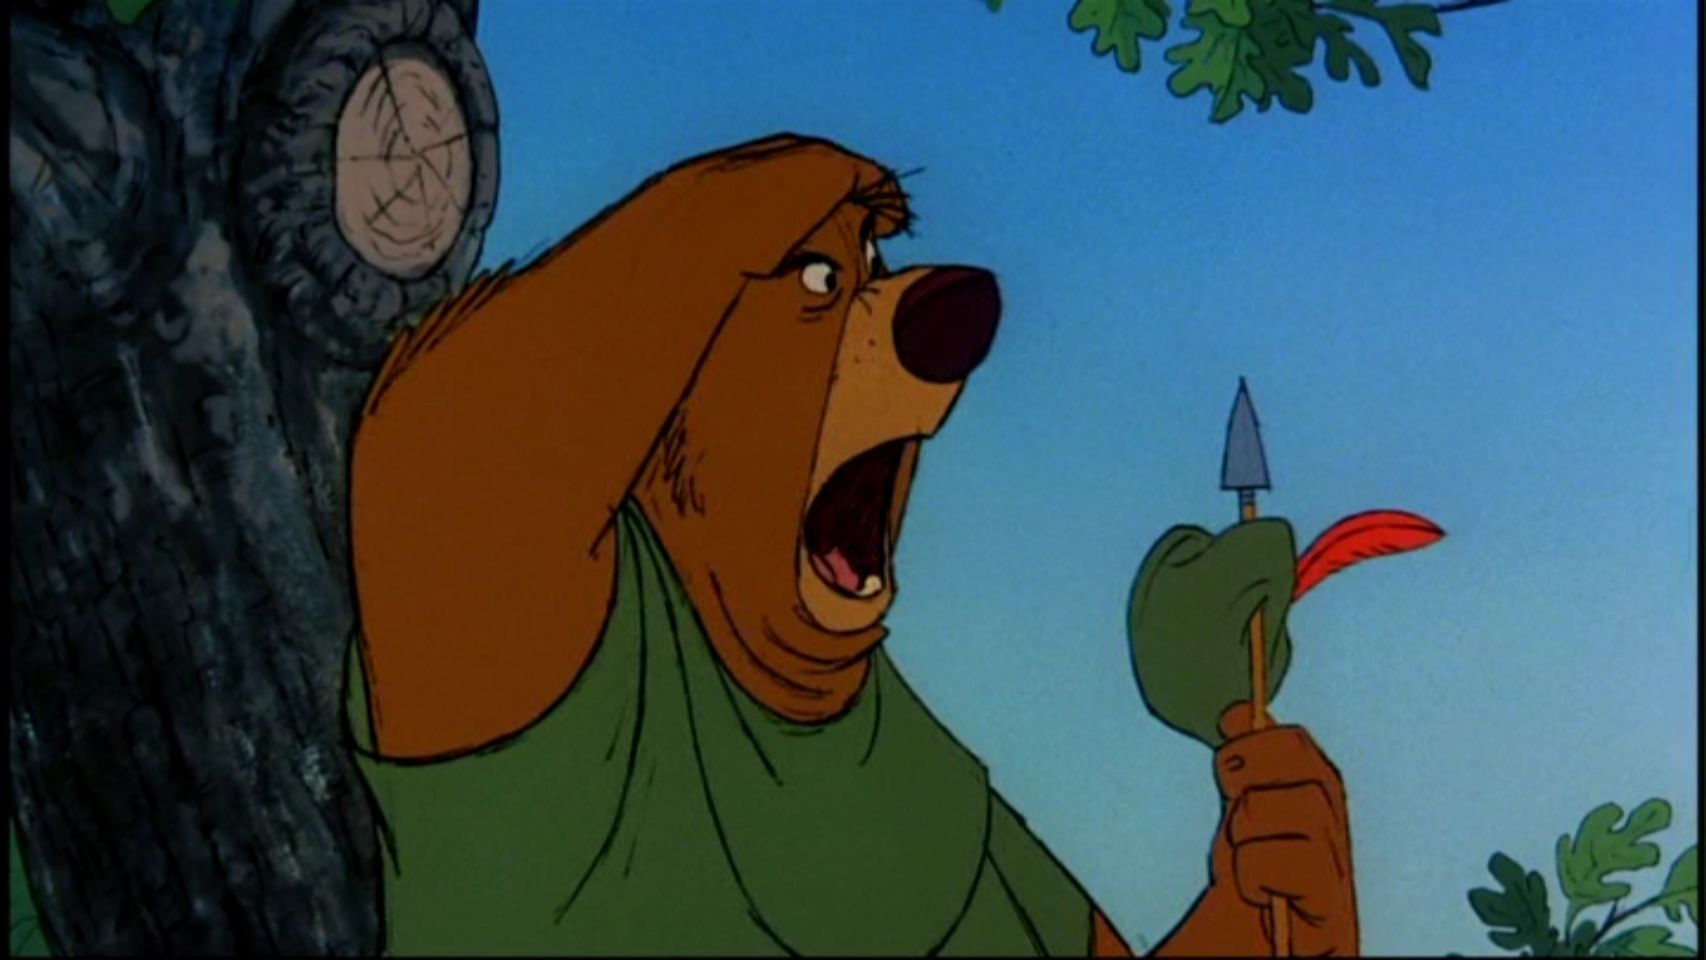 Robin Hood - Disney Image (19349898) - Fanpop